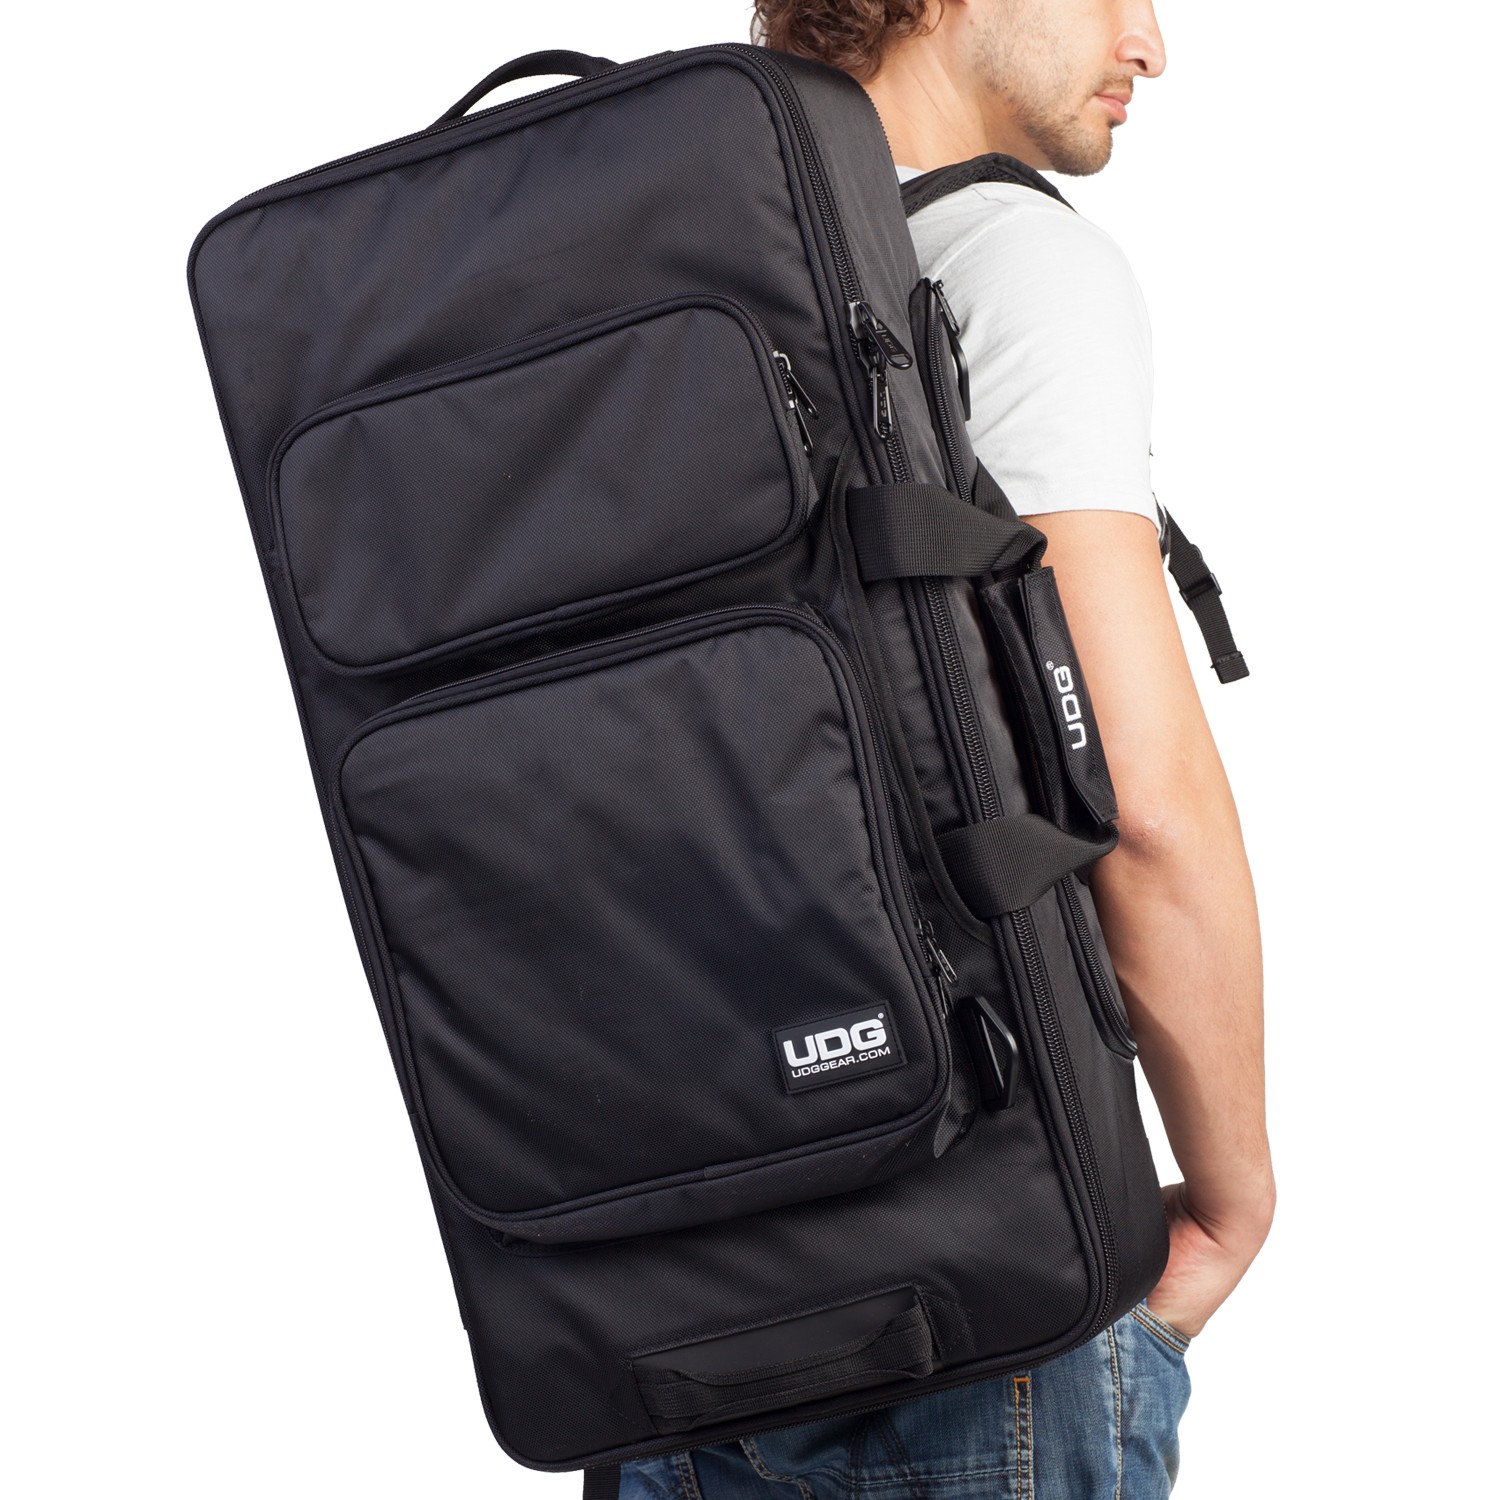 Udg Ultimate Midi Controller Backpack Large Black/orange Inside Mk2 - DJ-Trolleytasche - Variation 3